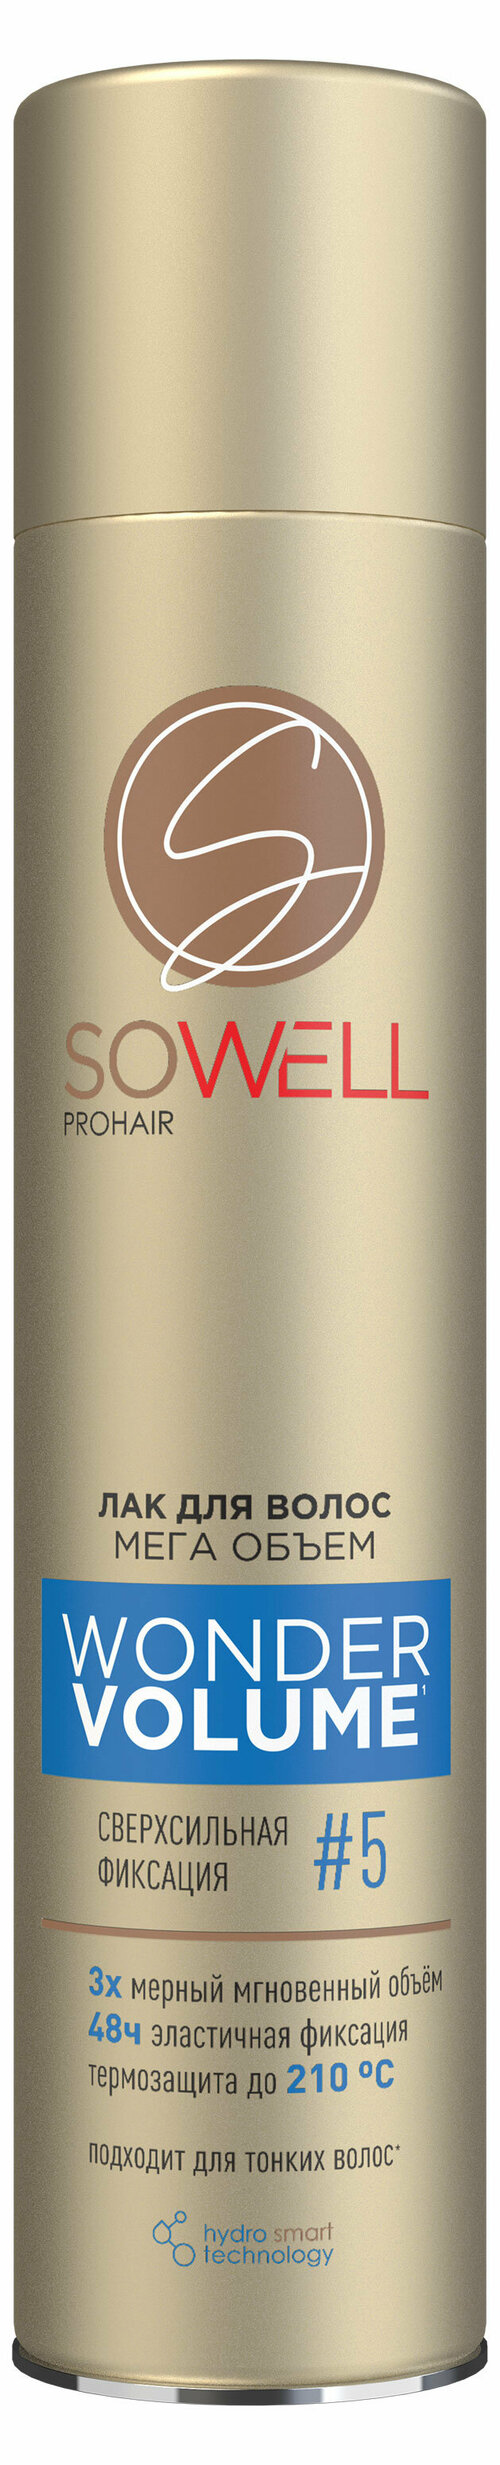 Лак для волос SoWell Wonder Volume Мега объем от корней сверхсильной фиксации №5, 300 мл